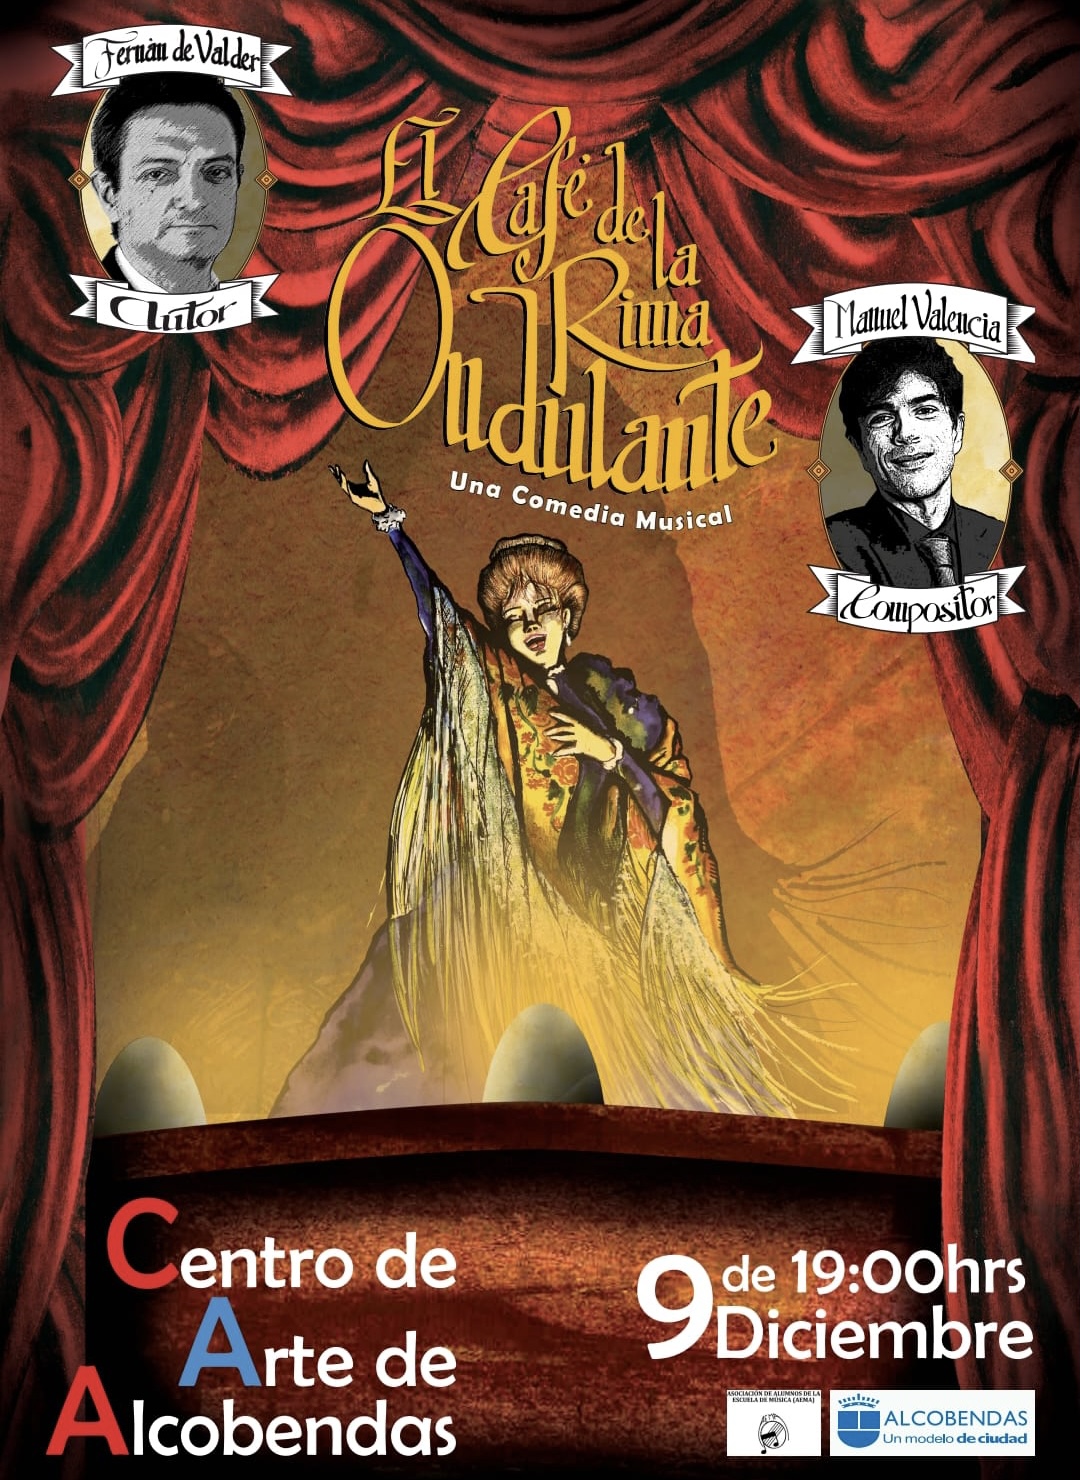 Imagen promocional de "El Café de la Rima Ondulante"